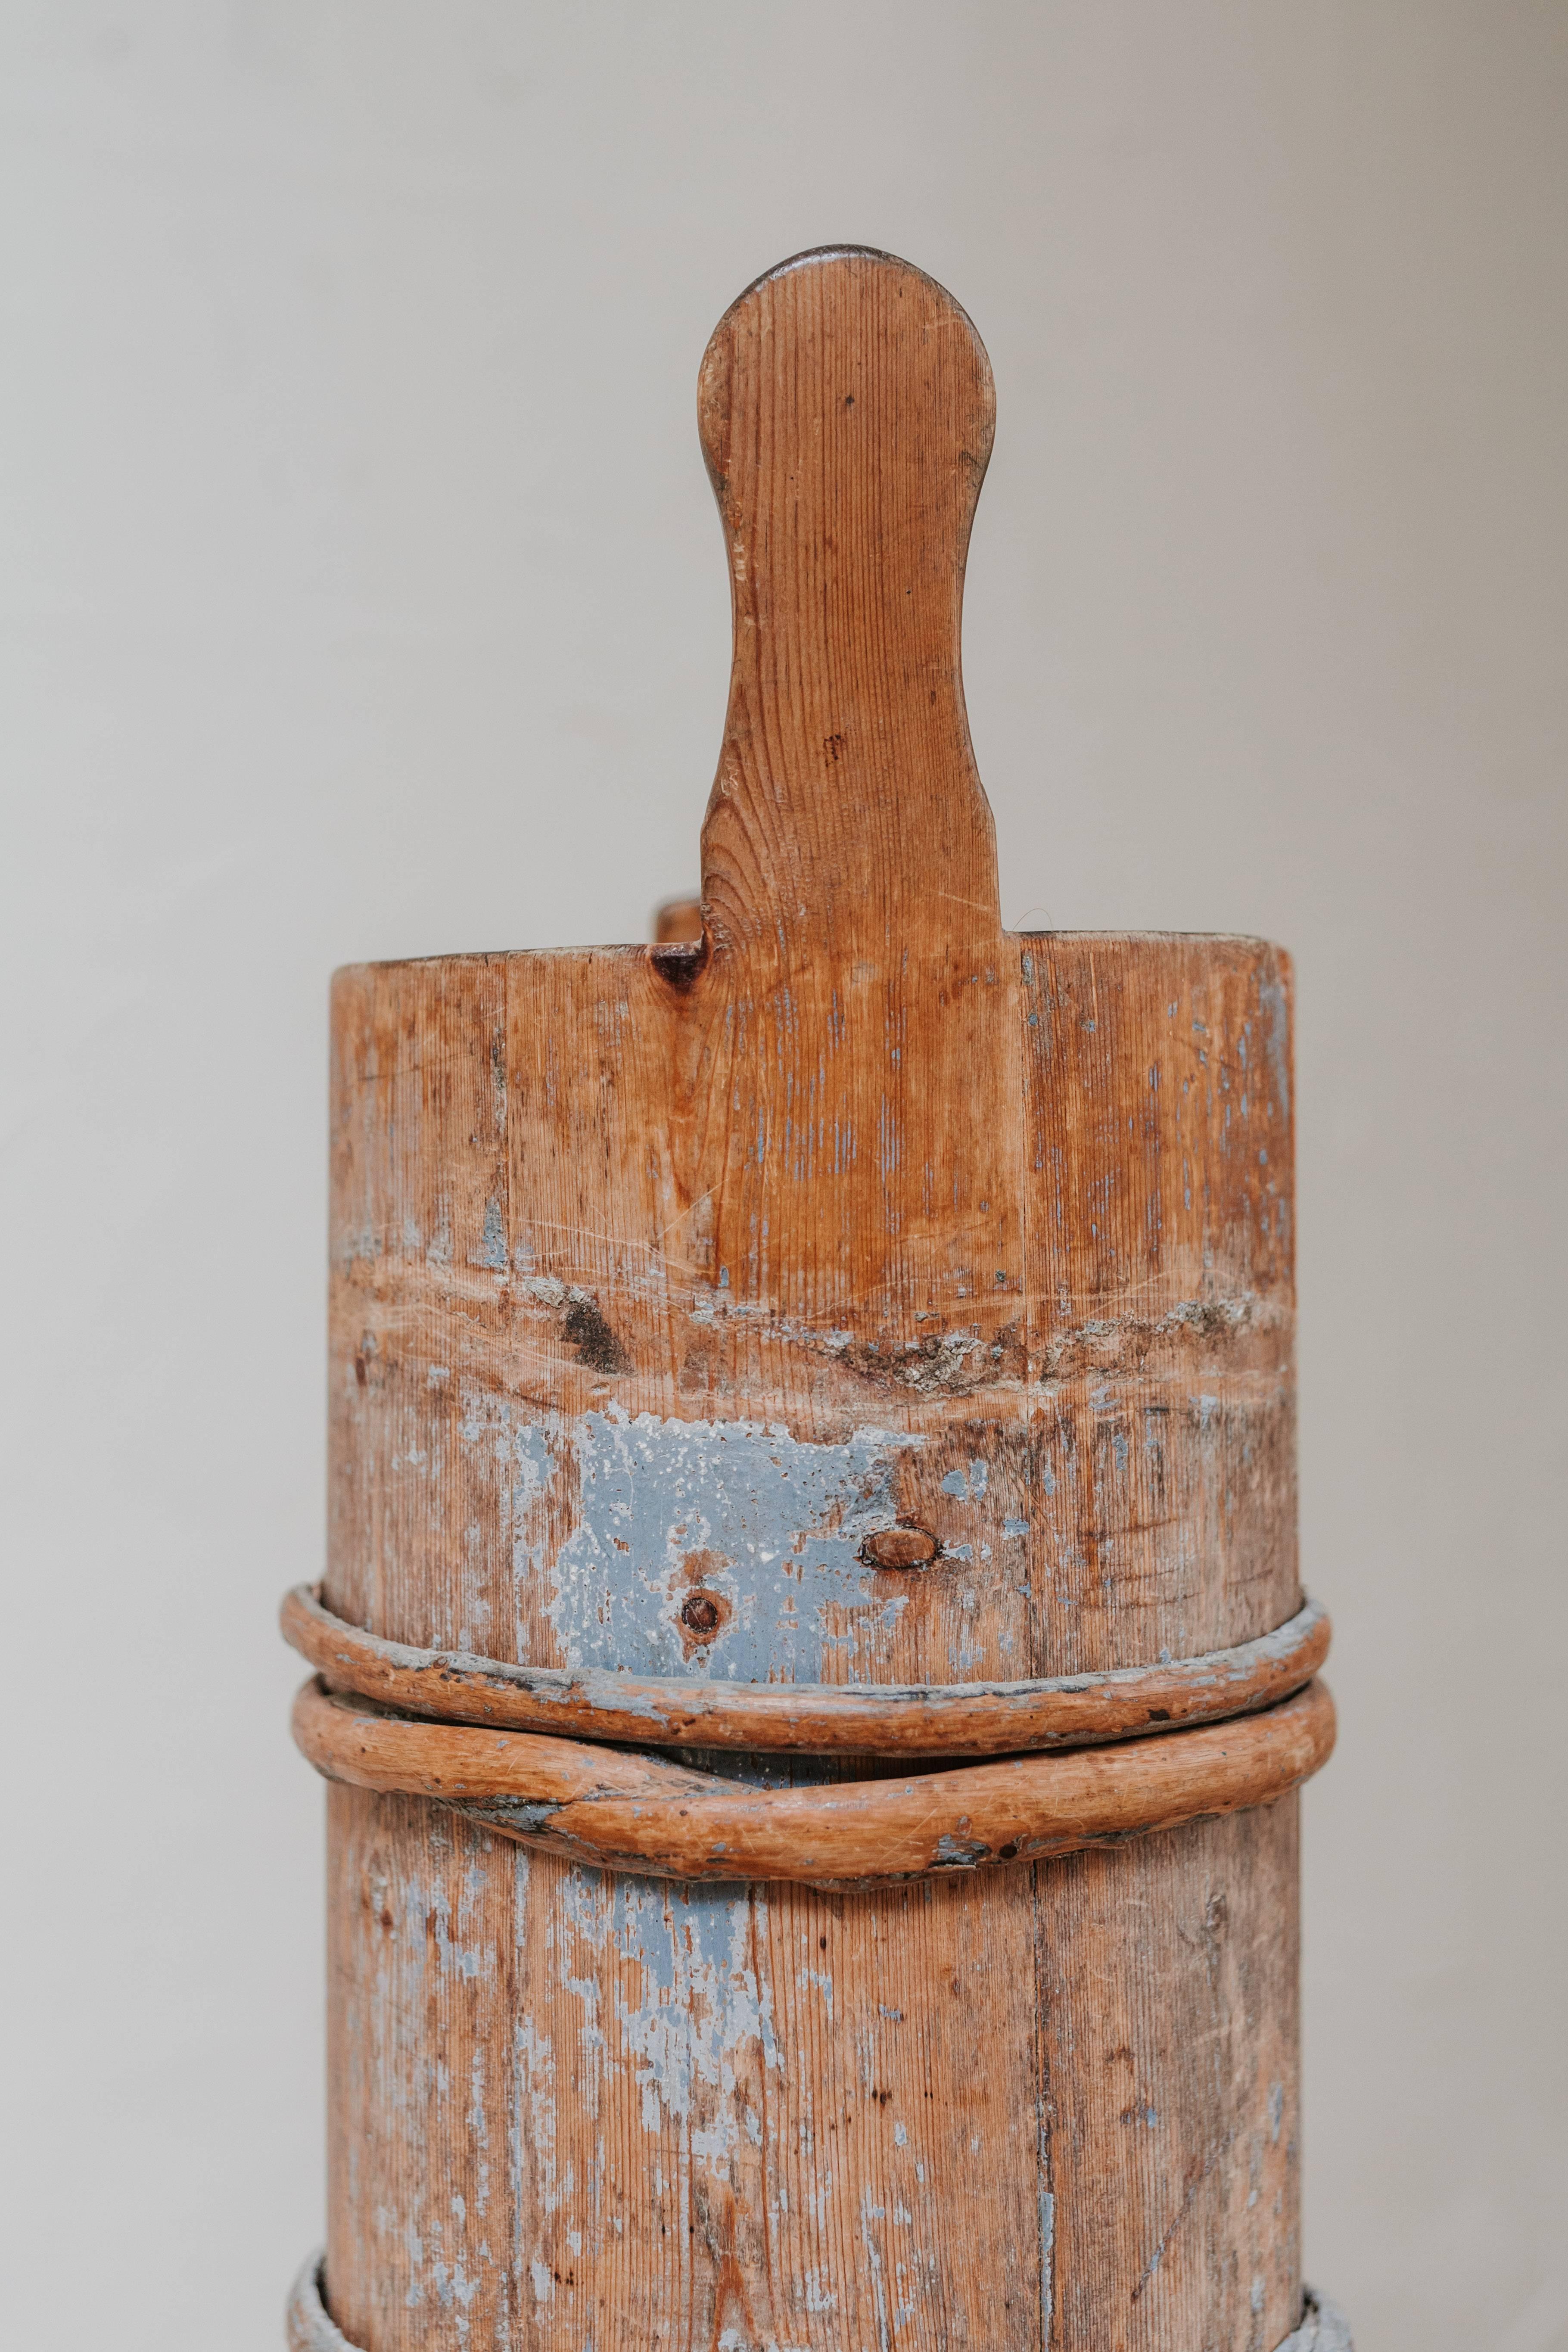 dies ist ein schwedischer Buttermacher aus dem 19. Jahrhundert mit Resten von alter blauer Farbe, der hier als Rohrstock/Ambruchständer verwendet wird.